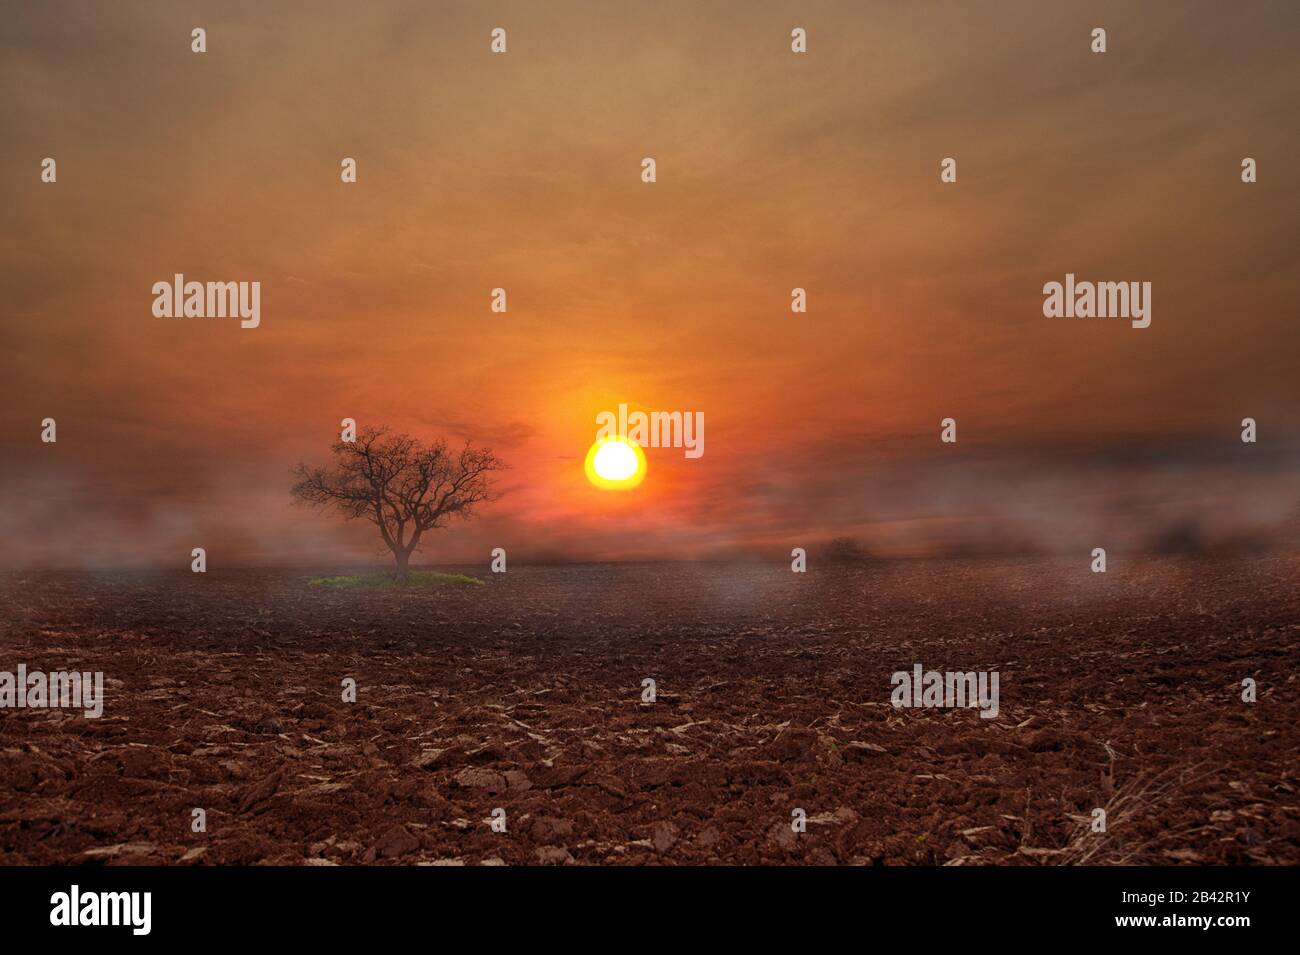 Stimmungsvolle Szene von einem Baum in einem irdenen Feld, bei dem der Sonnenuntergang und der Nebel aufgehen Stockfoto